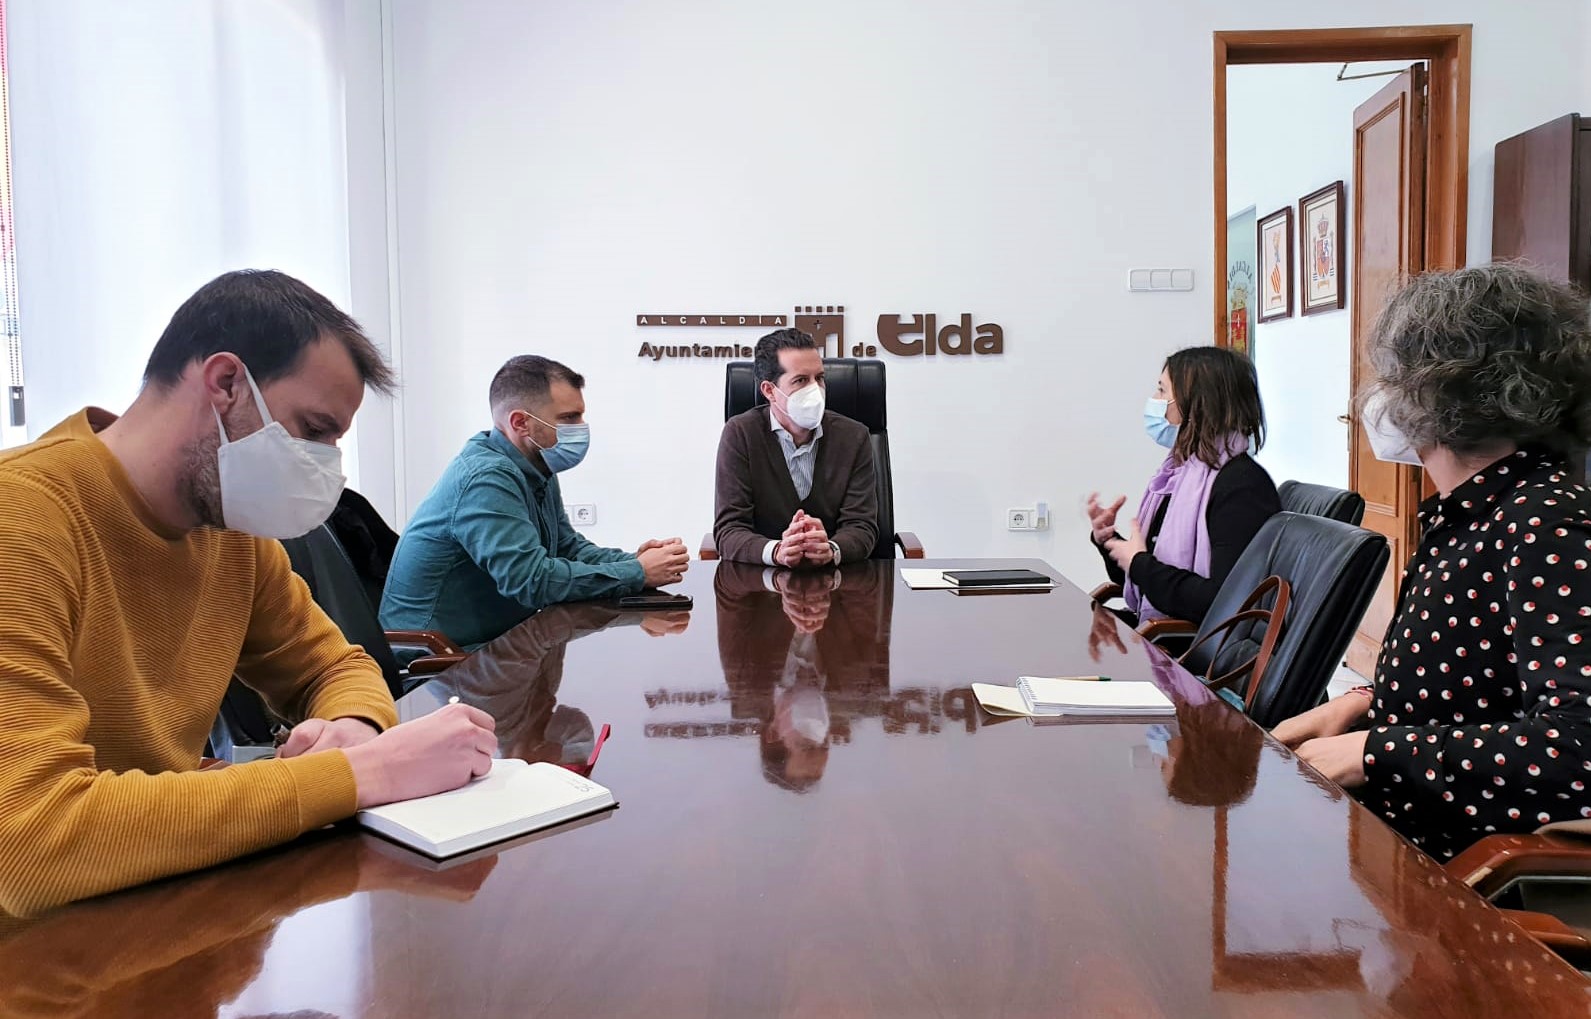 El Ayuntamiento impulsará la participación de los ciudadanas y ciudadanos de Elda en los presupuestos de la Generalitat Valenciana